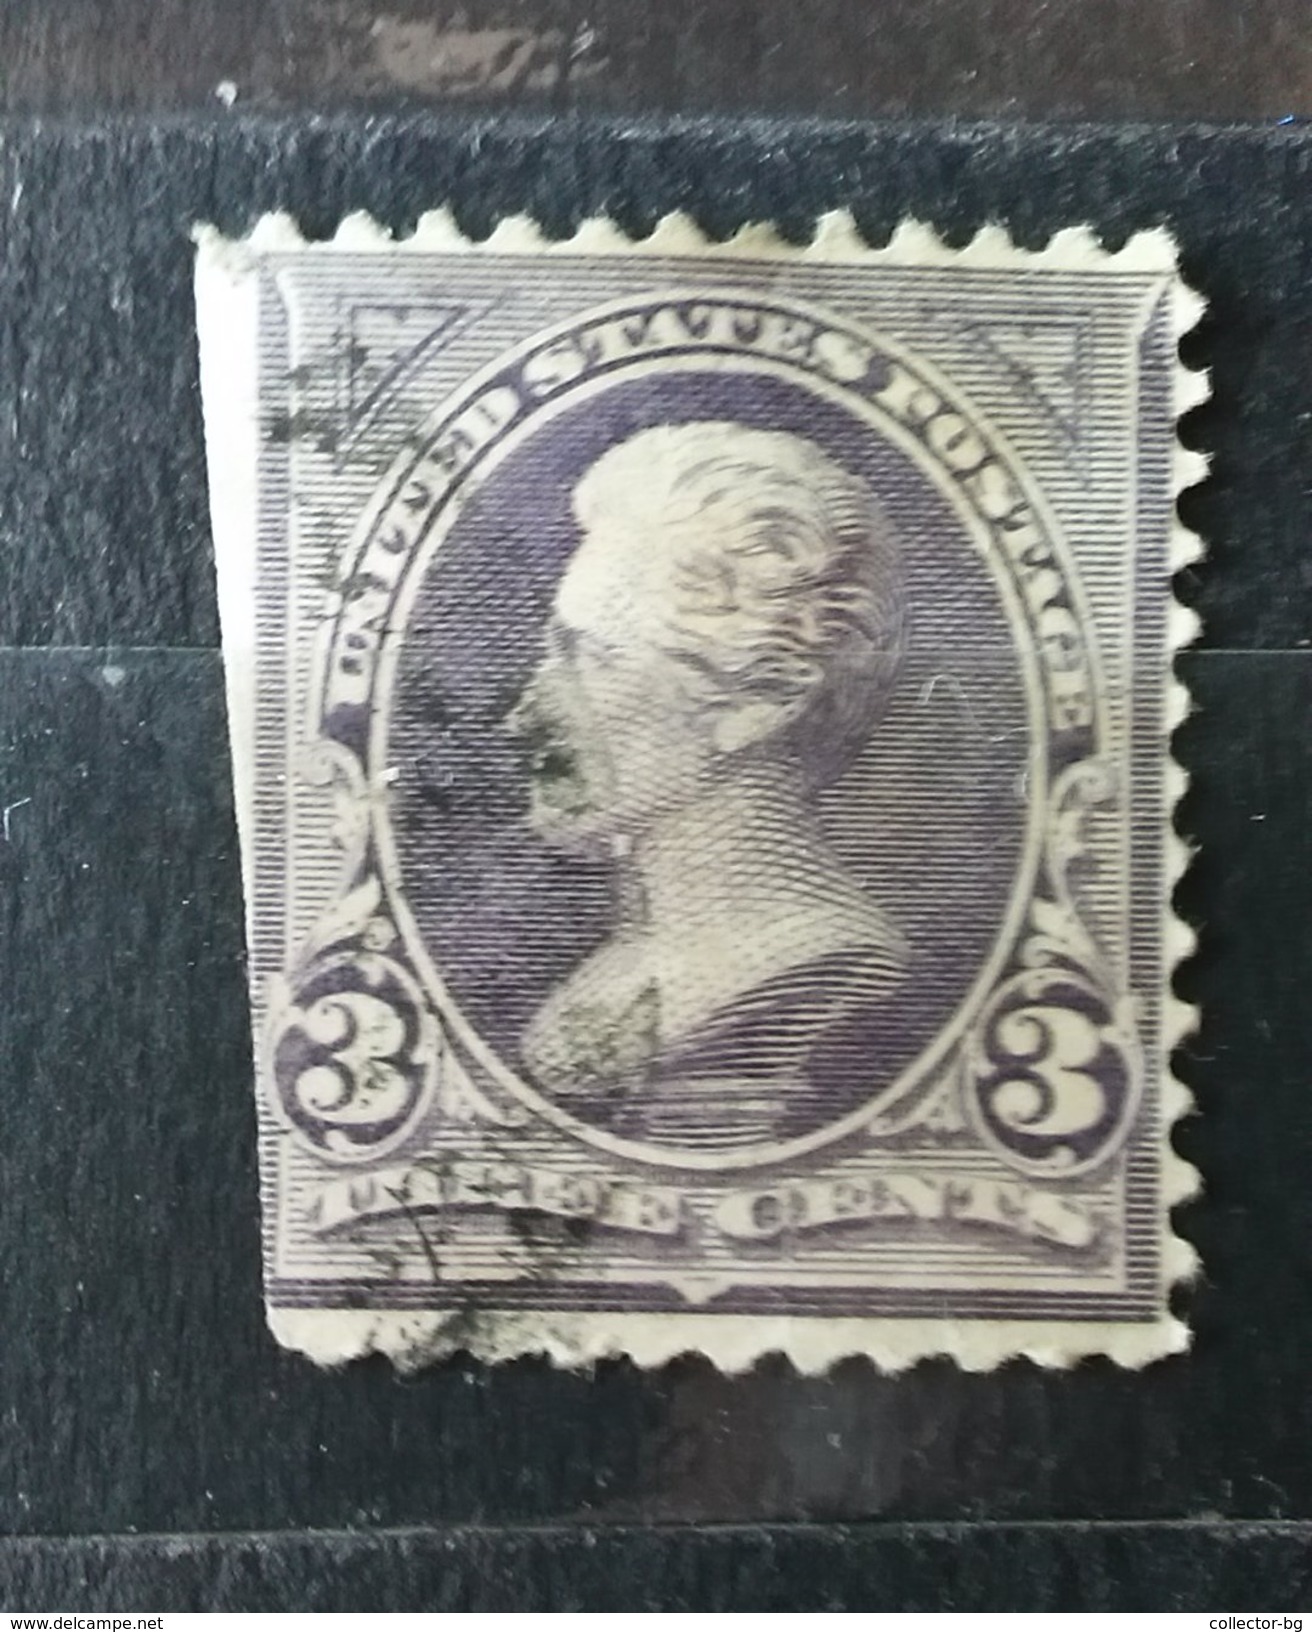 US Stamps  Vintage postage stamps, Rare stamps, Vintage stamps